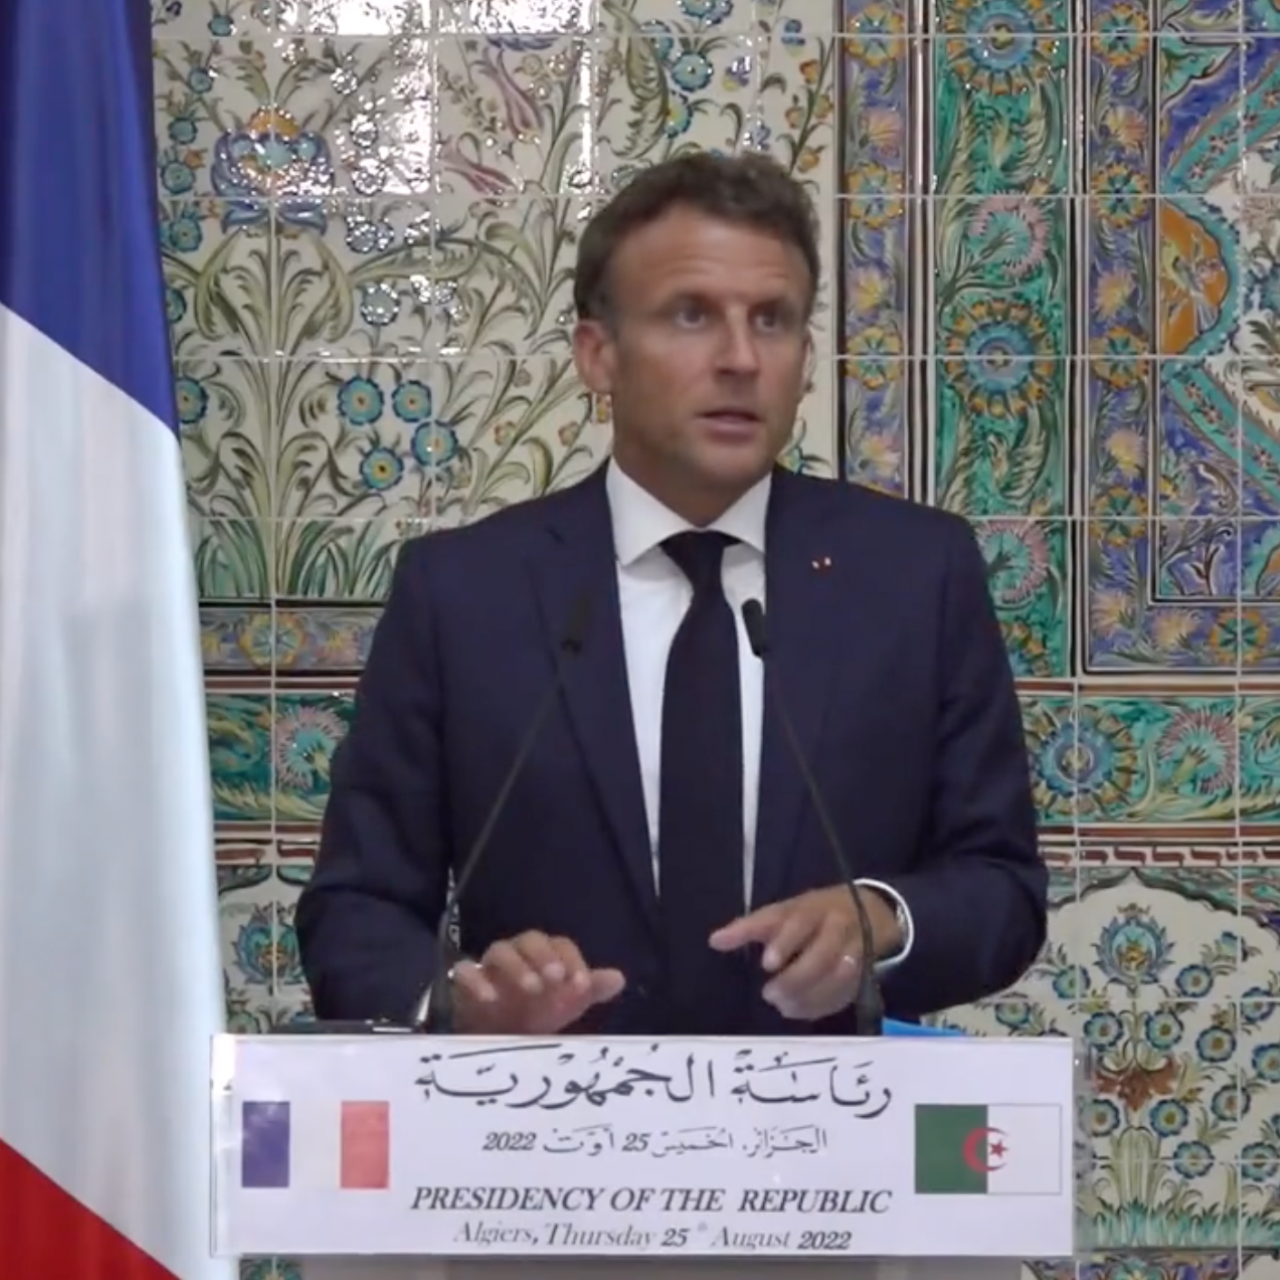 L’Algérie et la France veulent une nouvelle orientation de renforcement de leurs relations bilatérales fondée sur un partenariat global d’exception  2